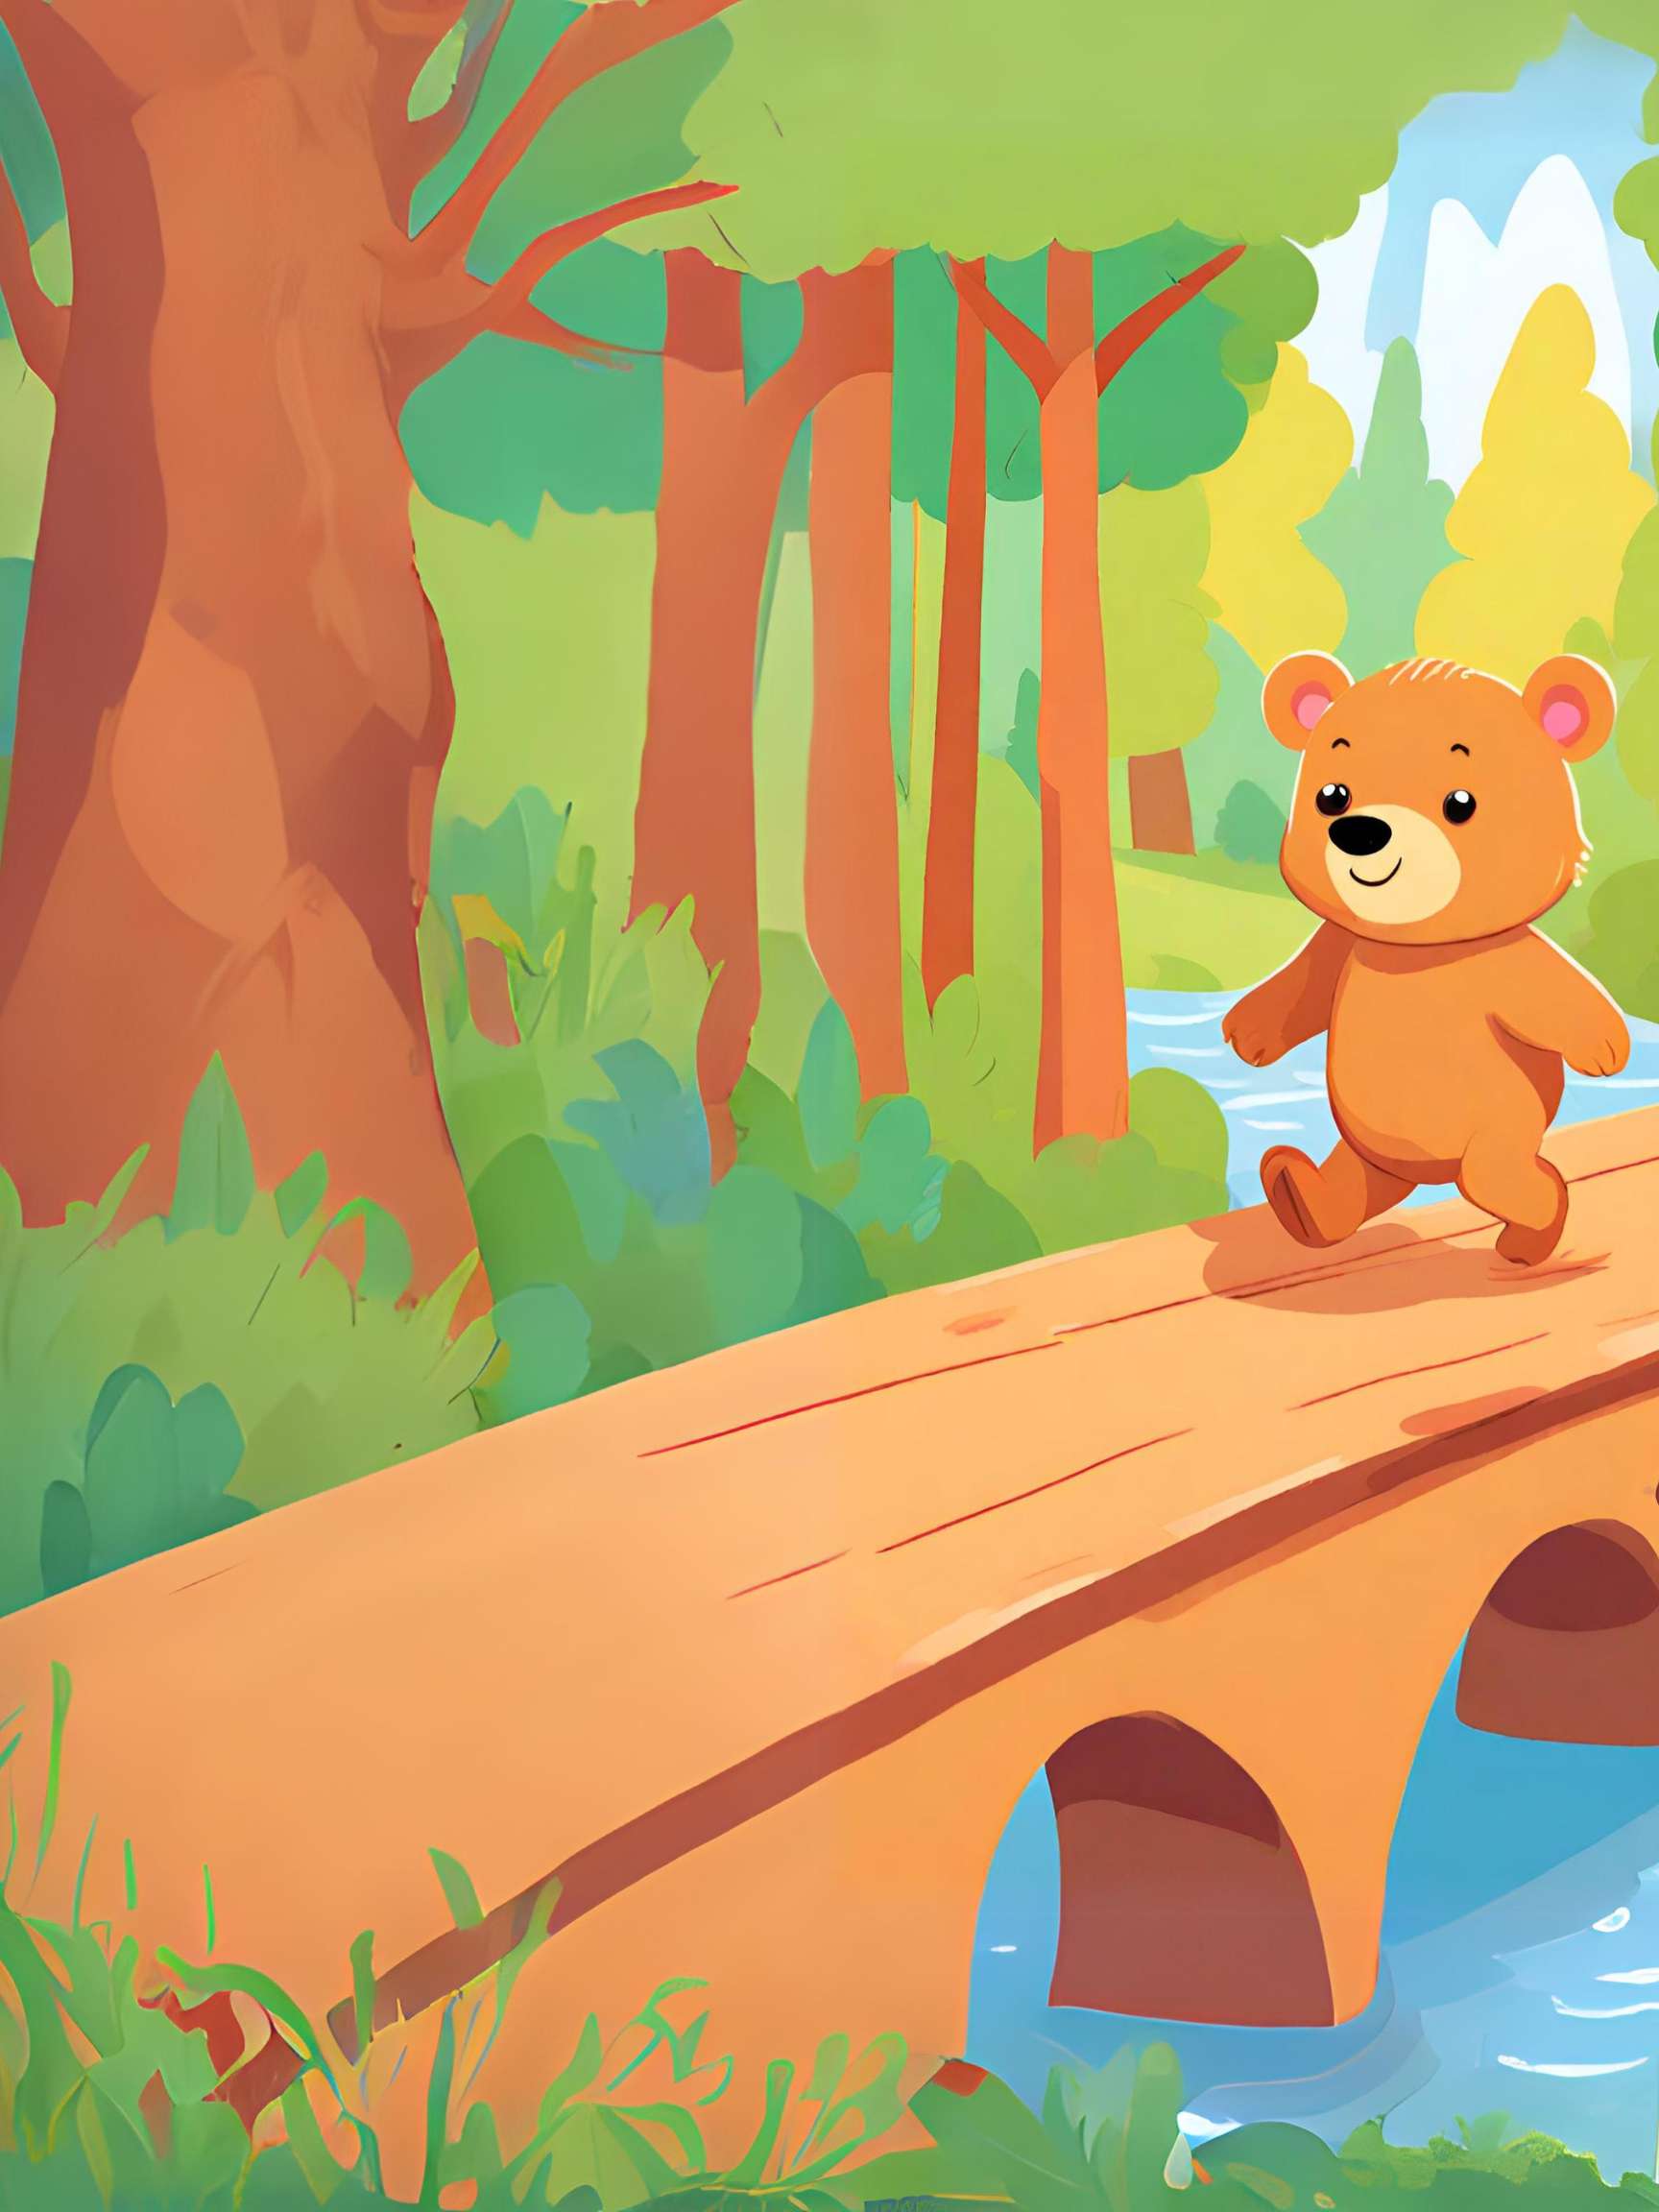 AI image of a bear walking across a bridge